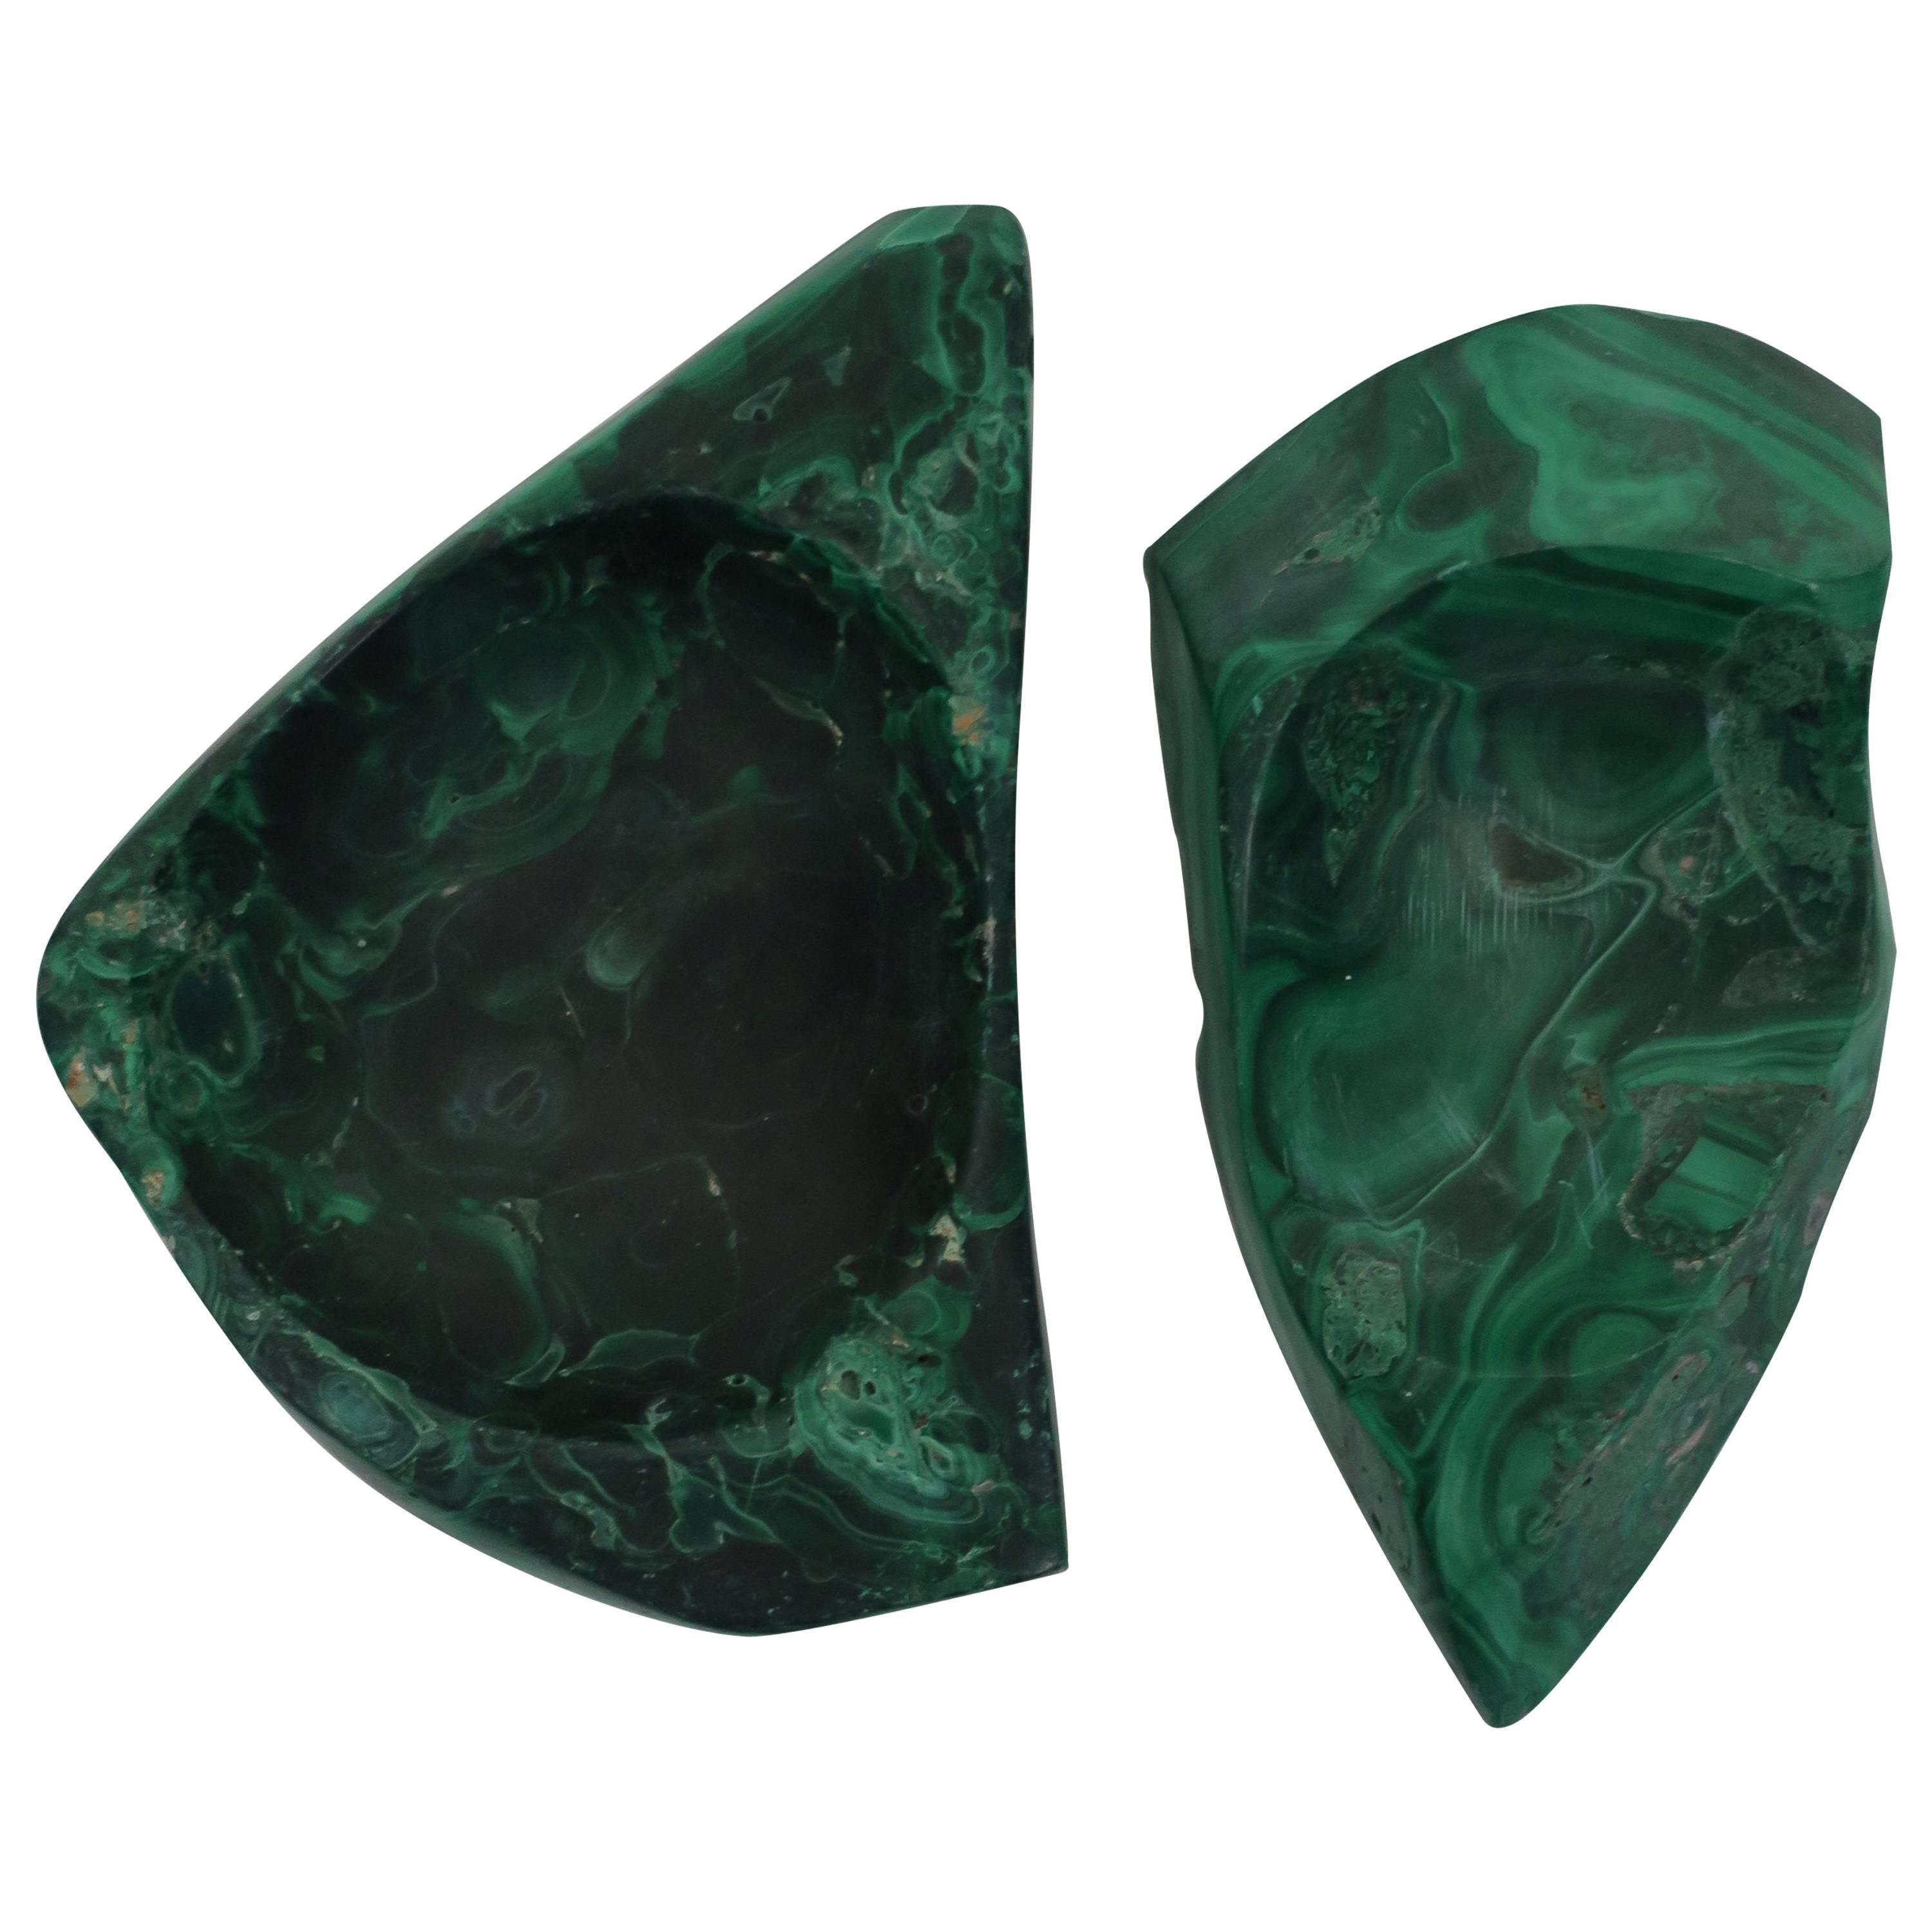 Green Malachite Desk Vessel or Jewelry Dish 8